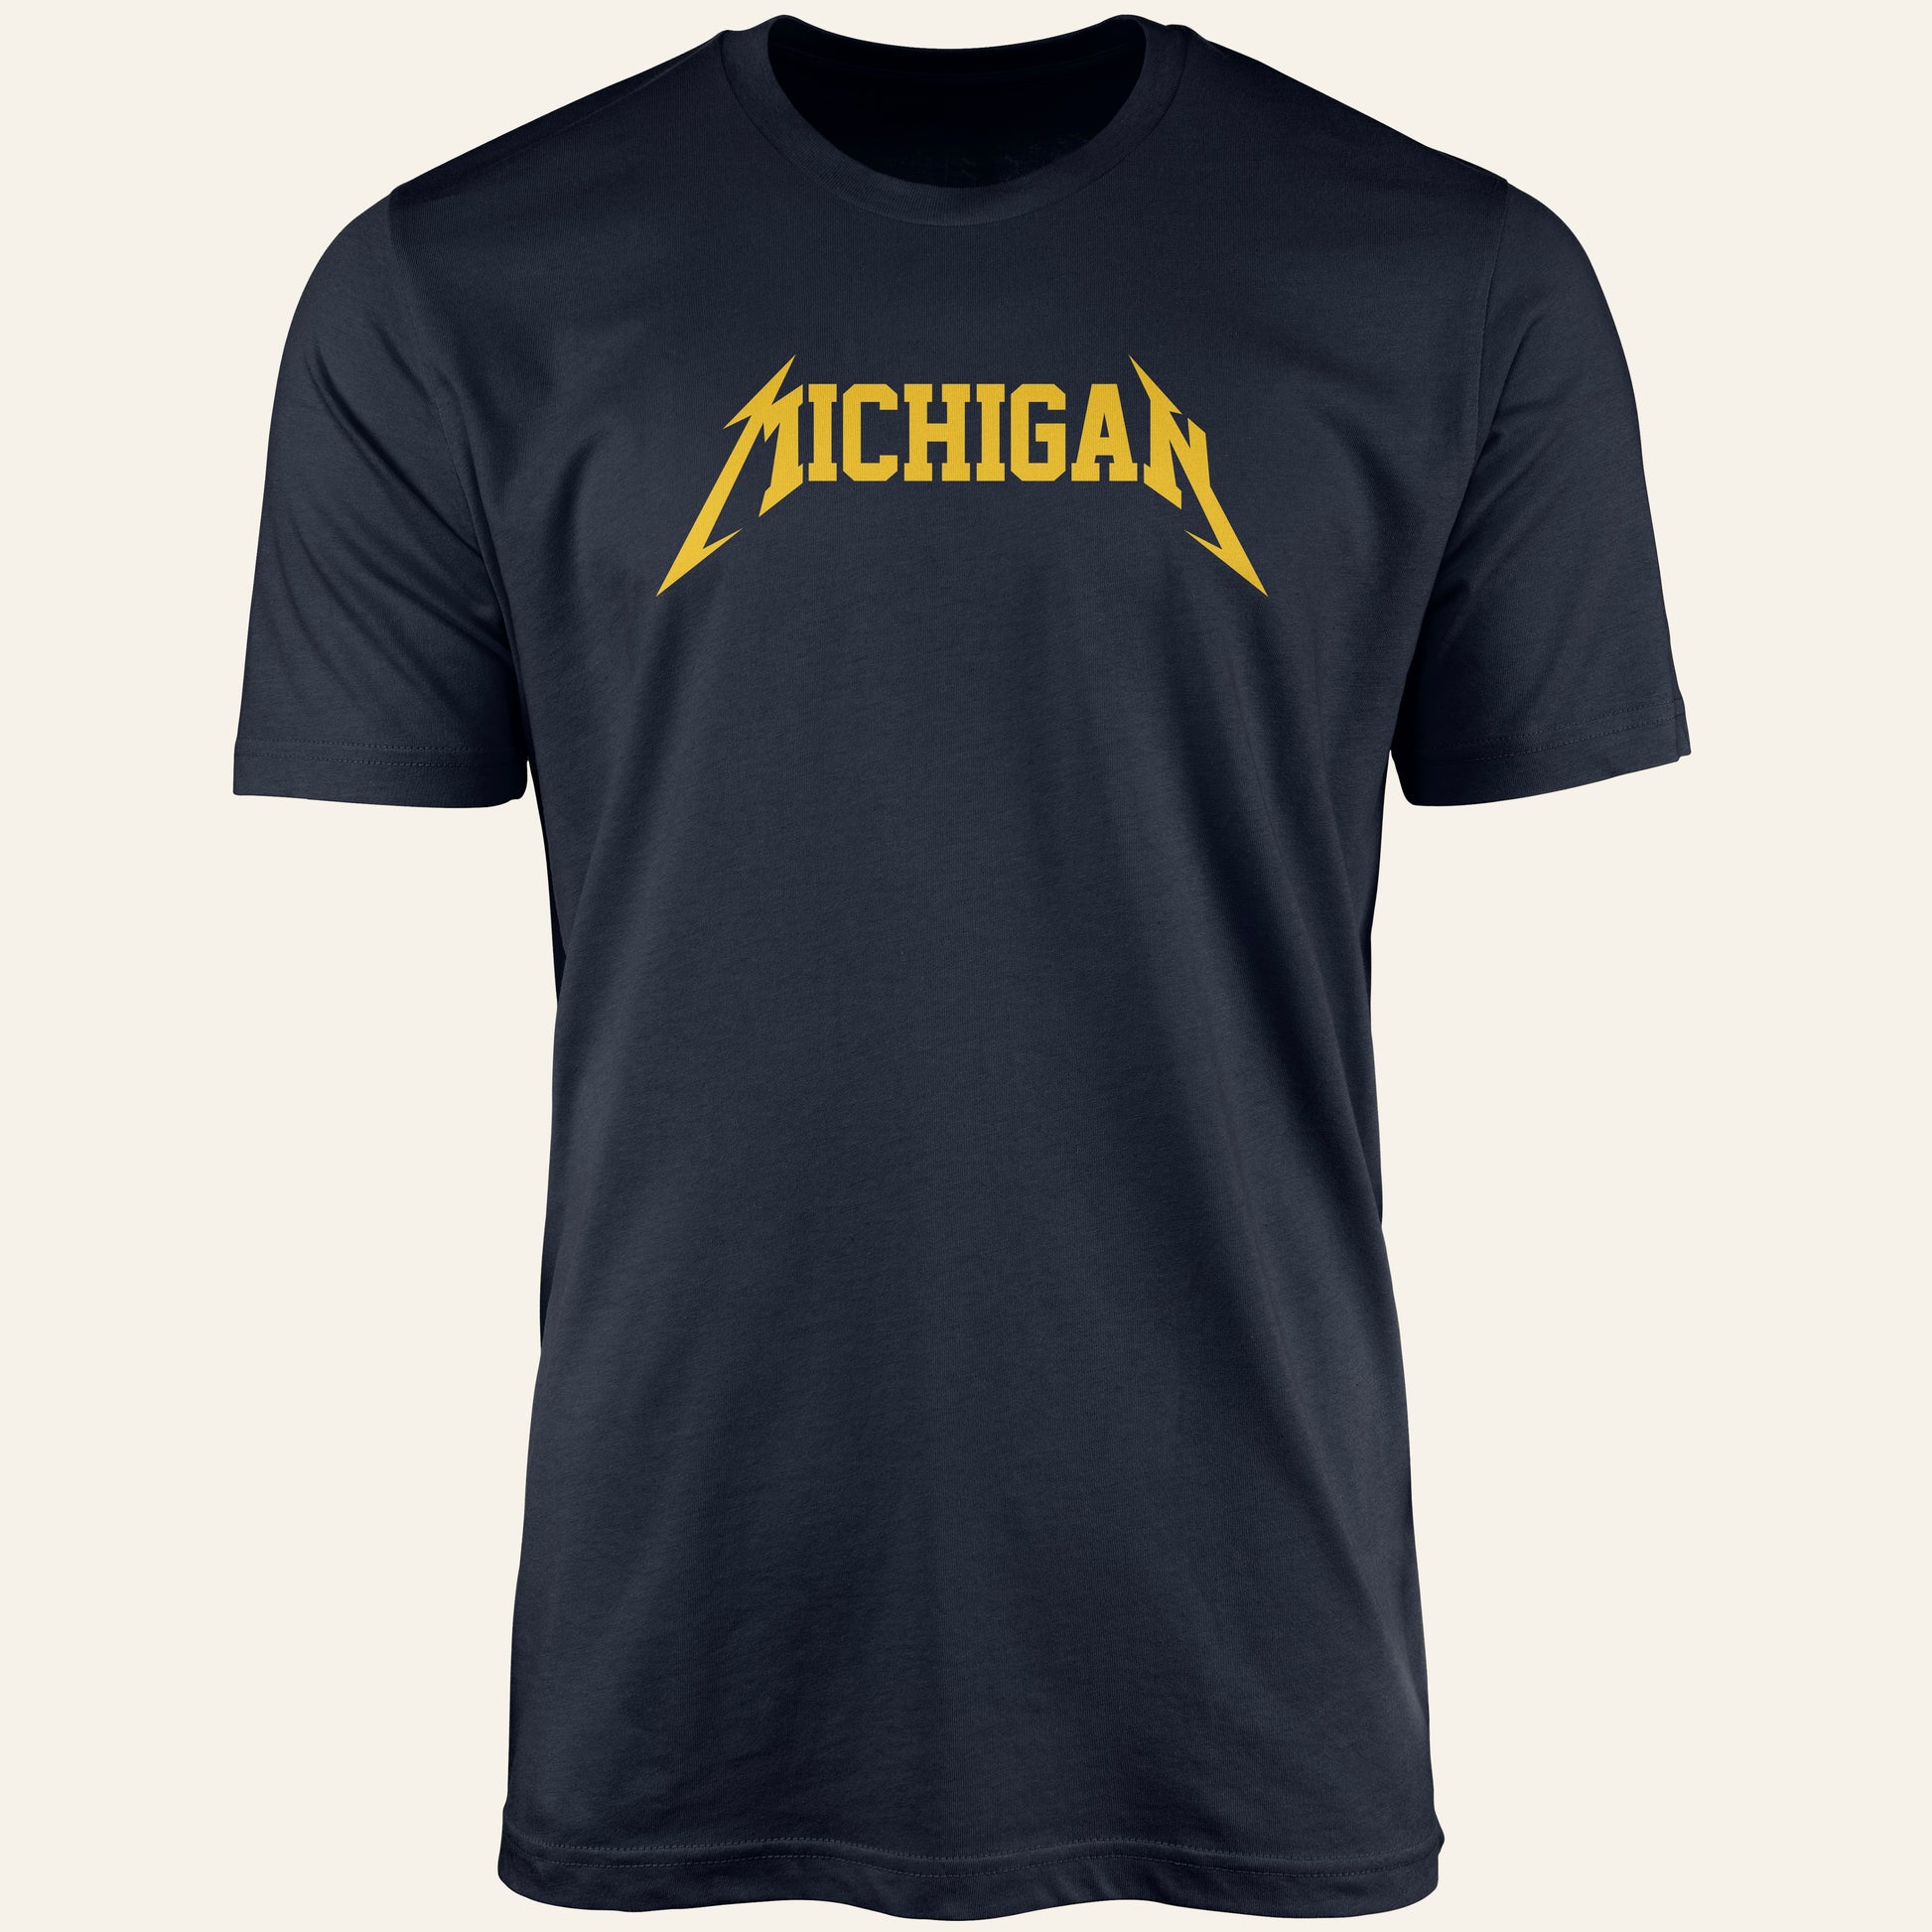 Navy Michigan Shirt Full View